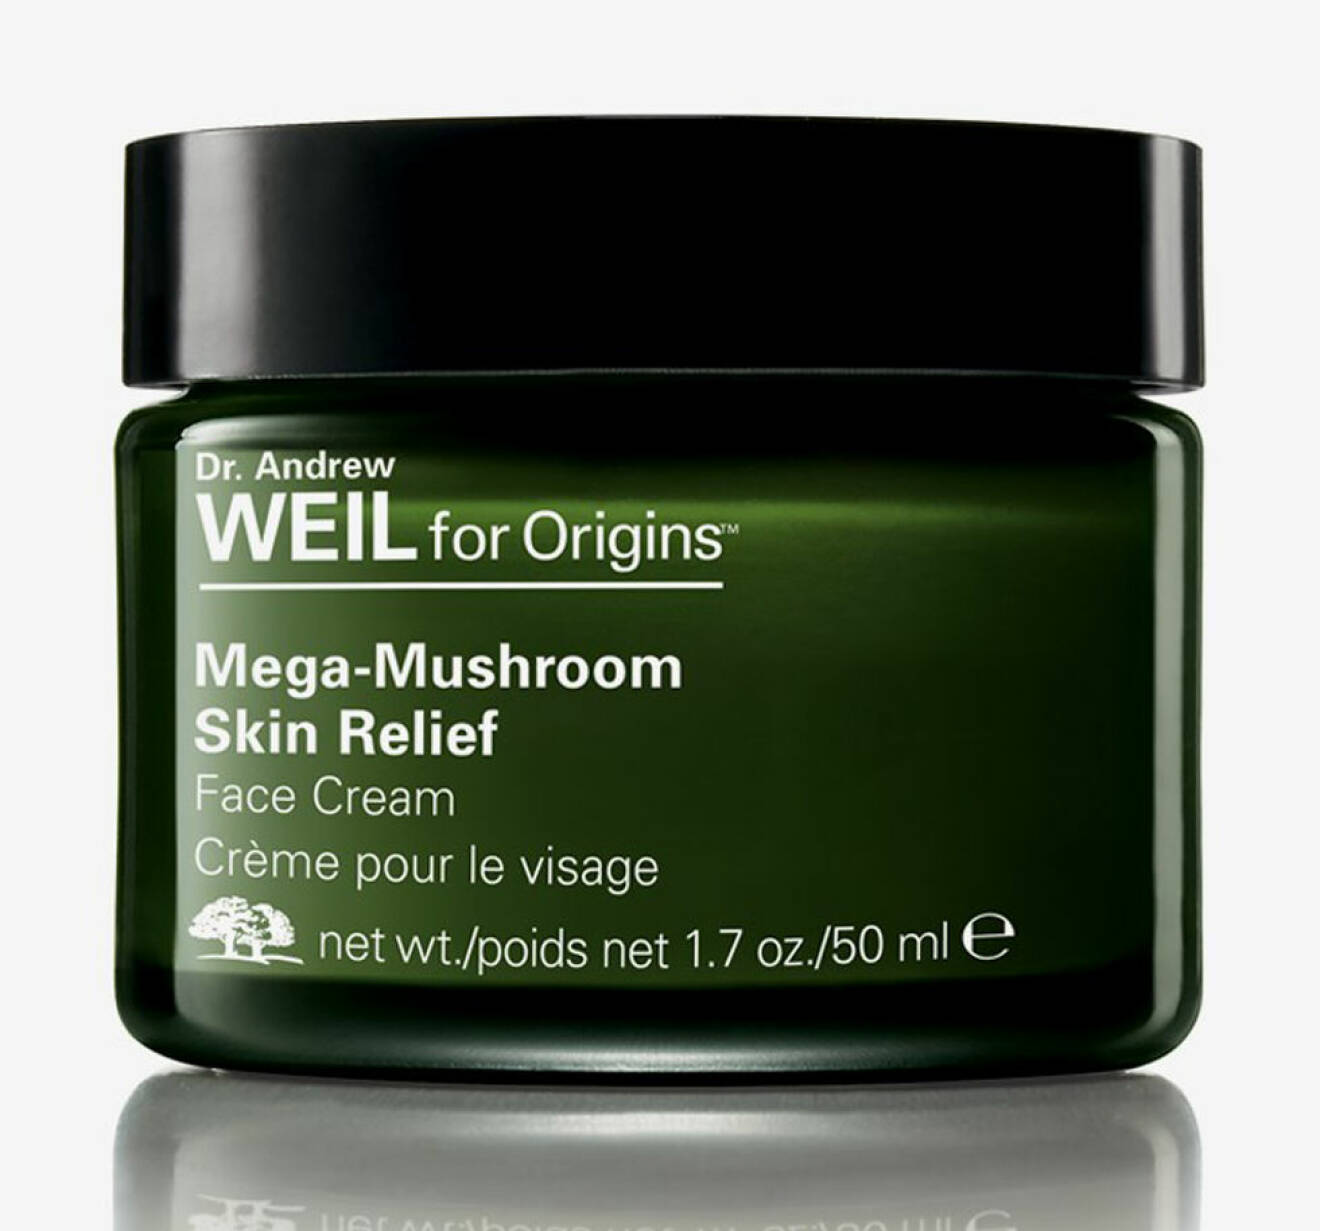 Mega-Mushroom Skin Relief, Dr. Andrew Weil for Origins